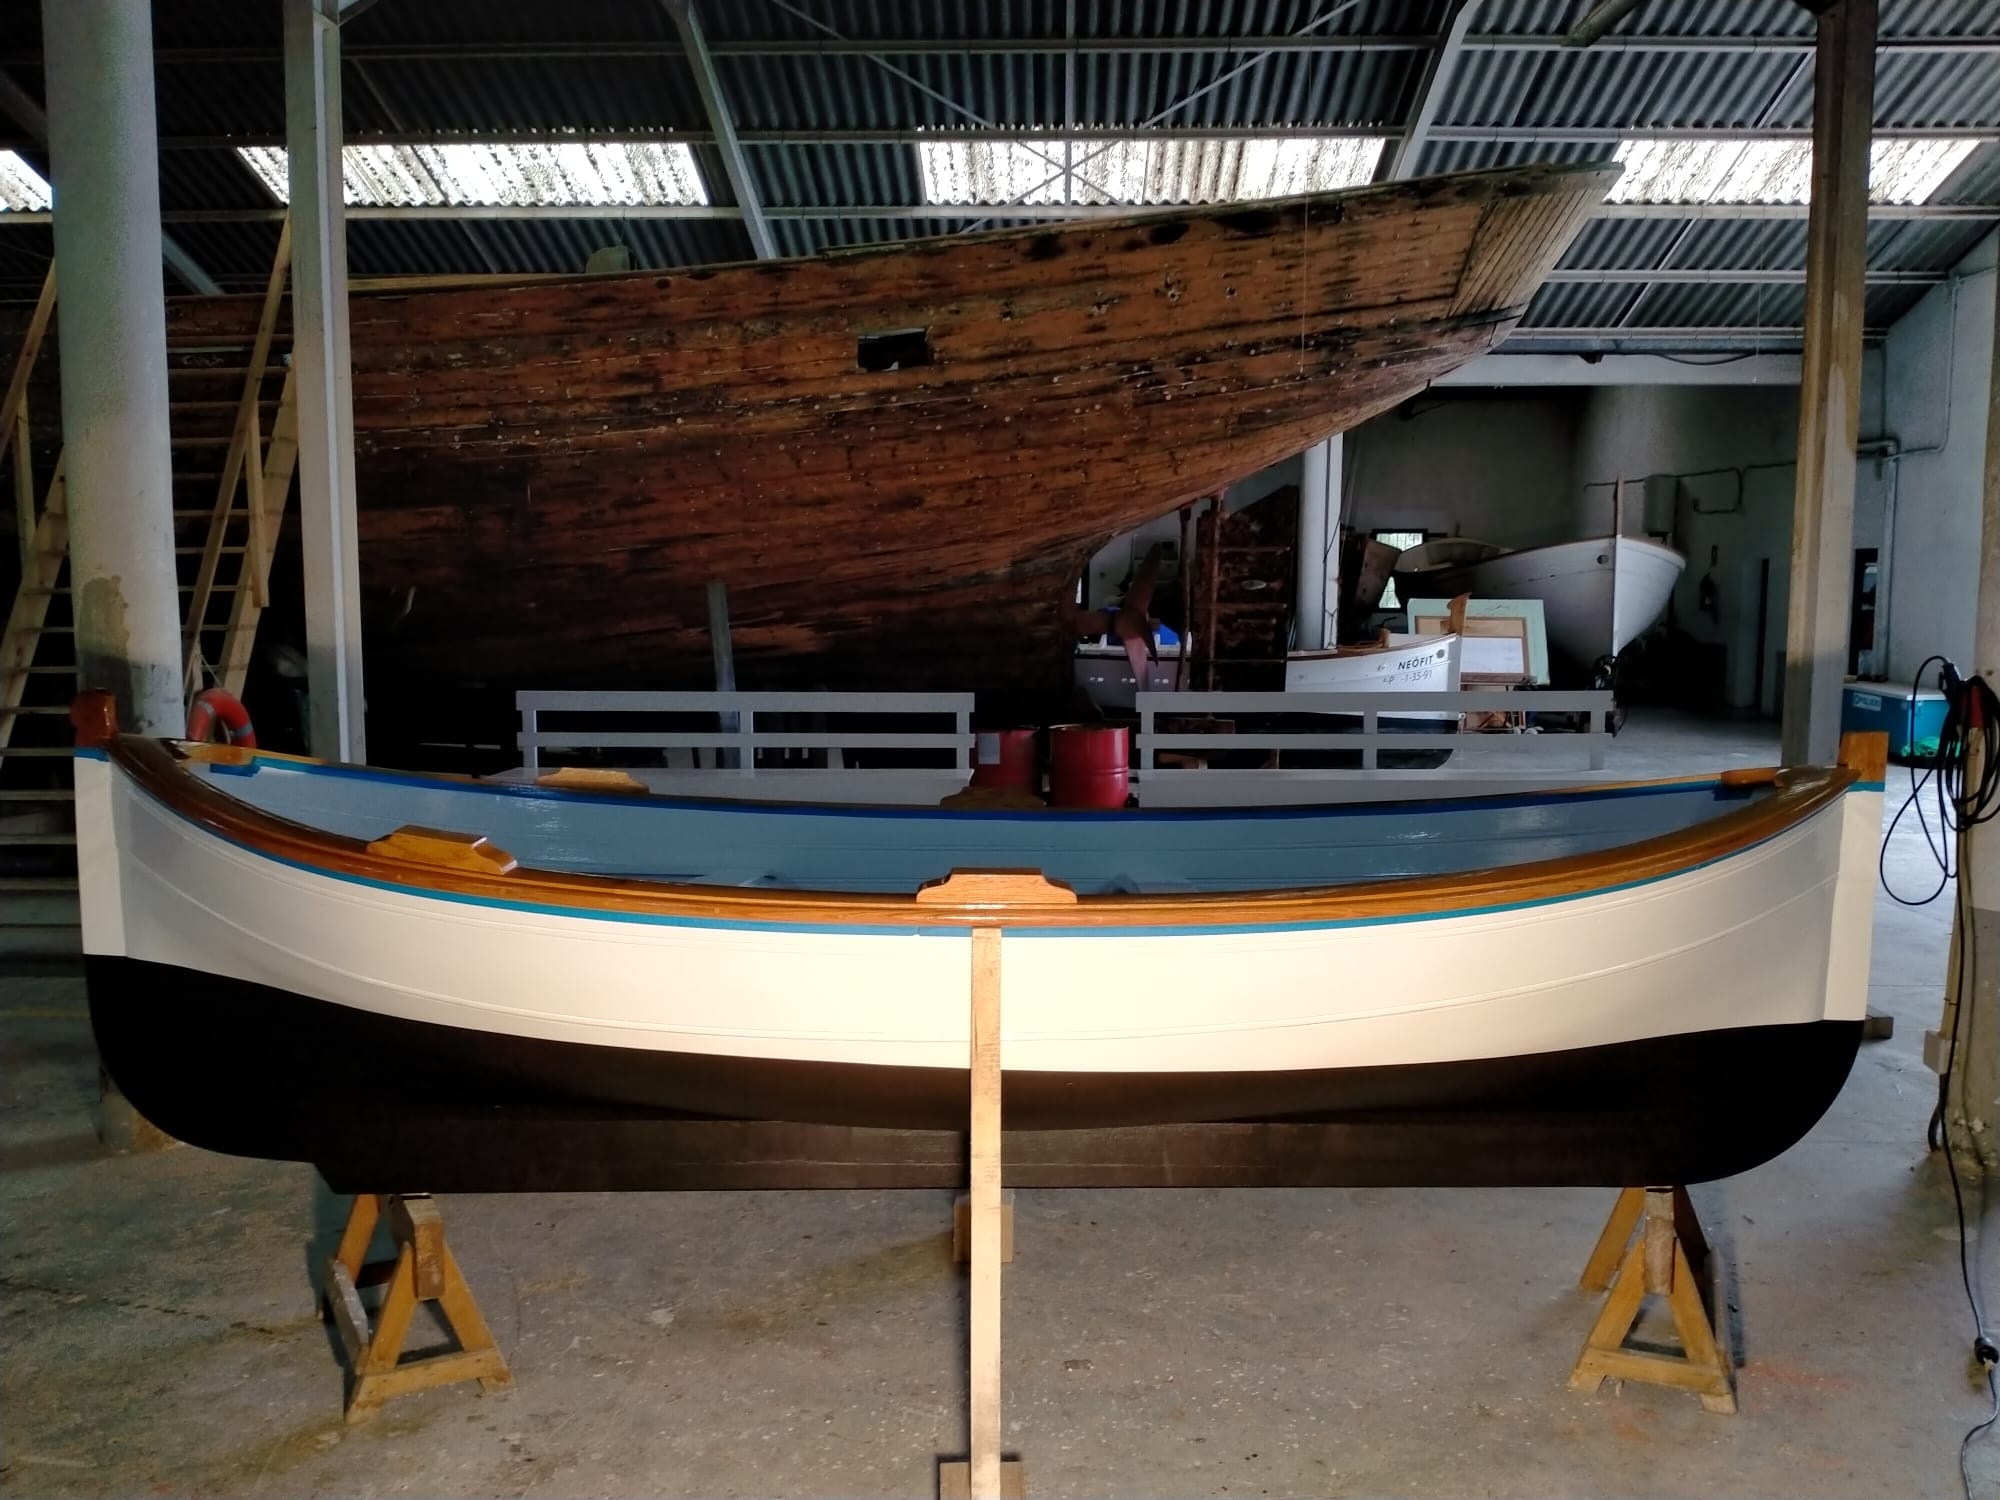 La nueva embarcación construida por los “mestres d’aixa” busca nombre